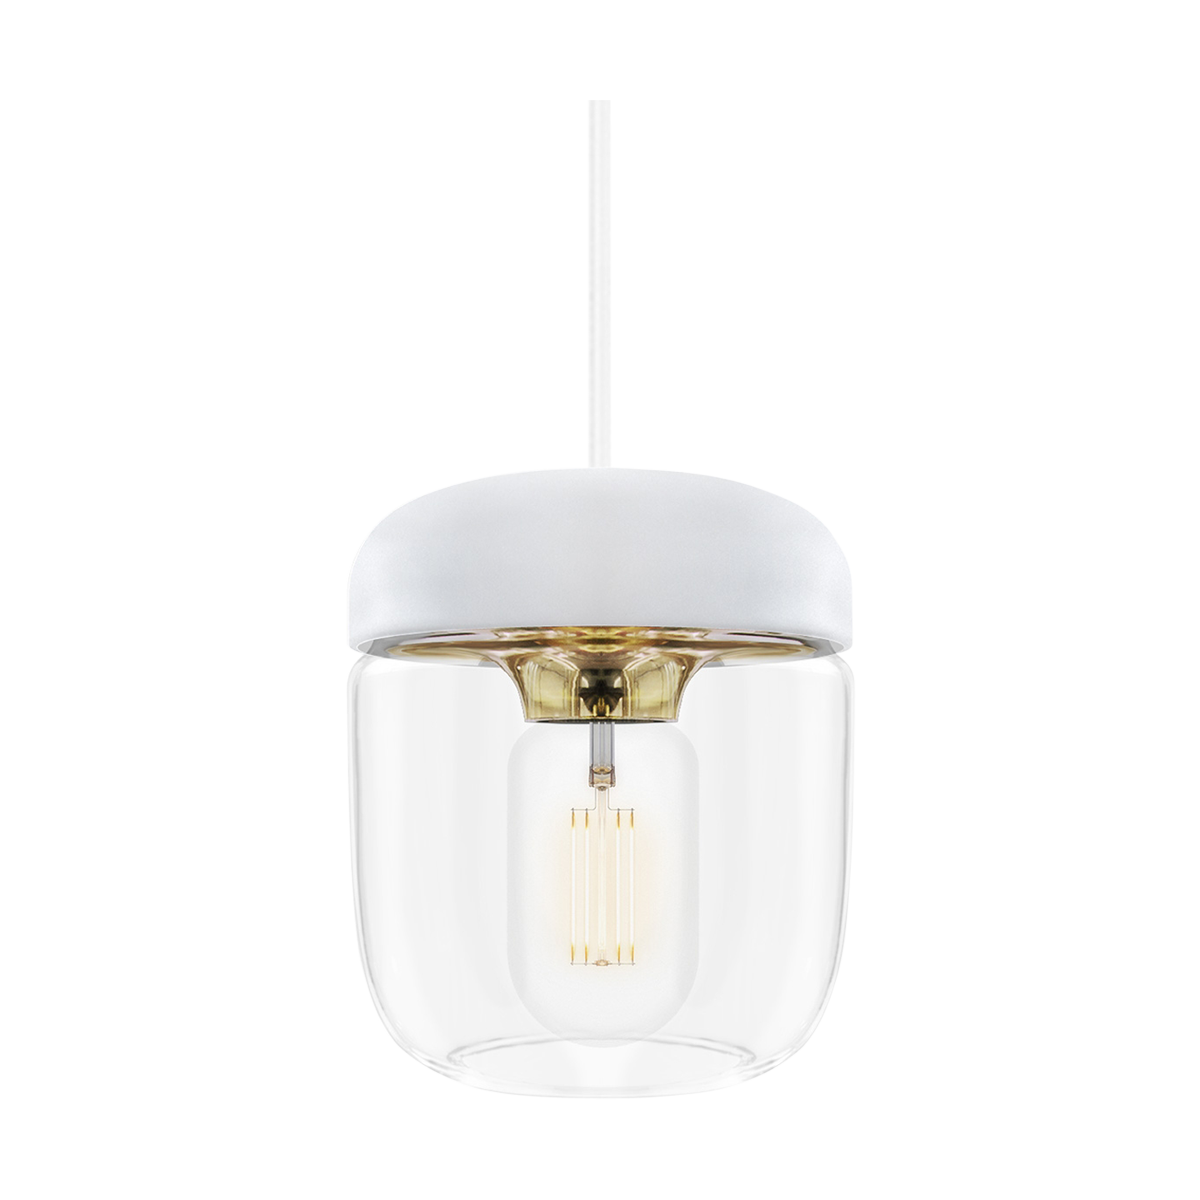 Acorn hanglamp wit met brass - met koordset wit - Ø 14 cm